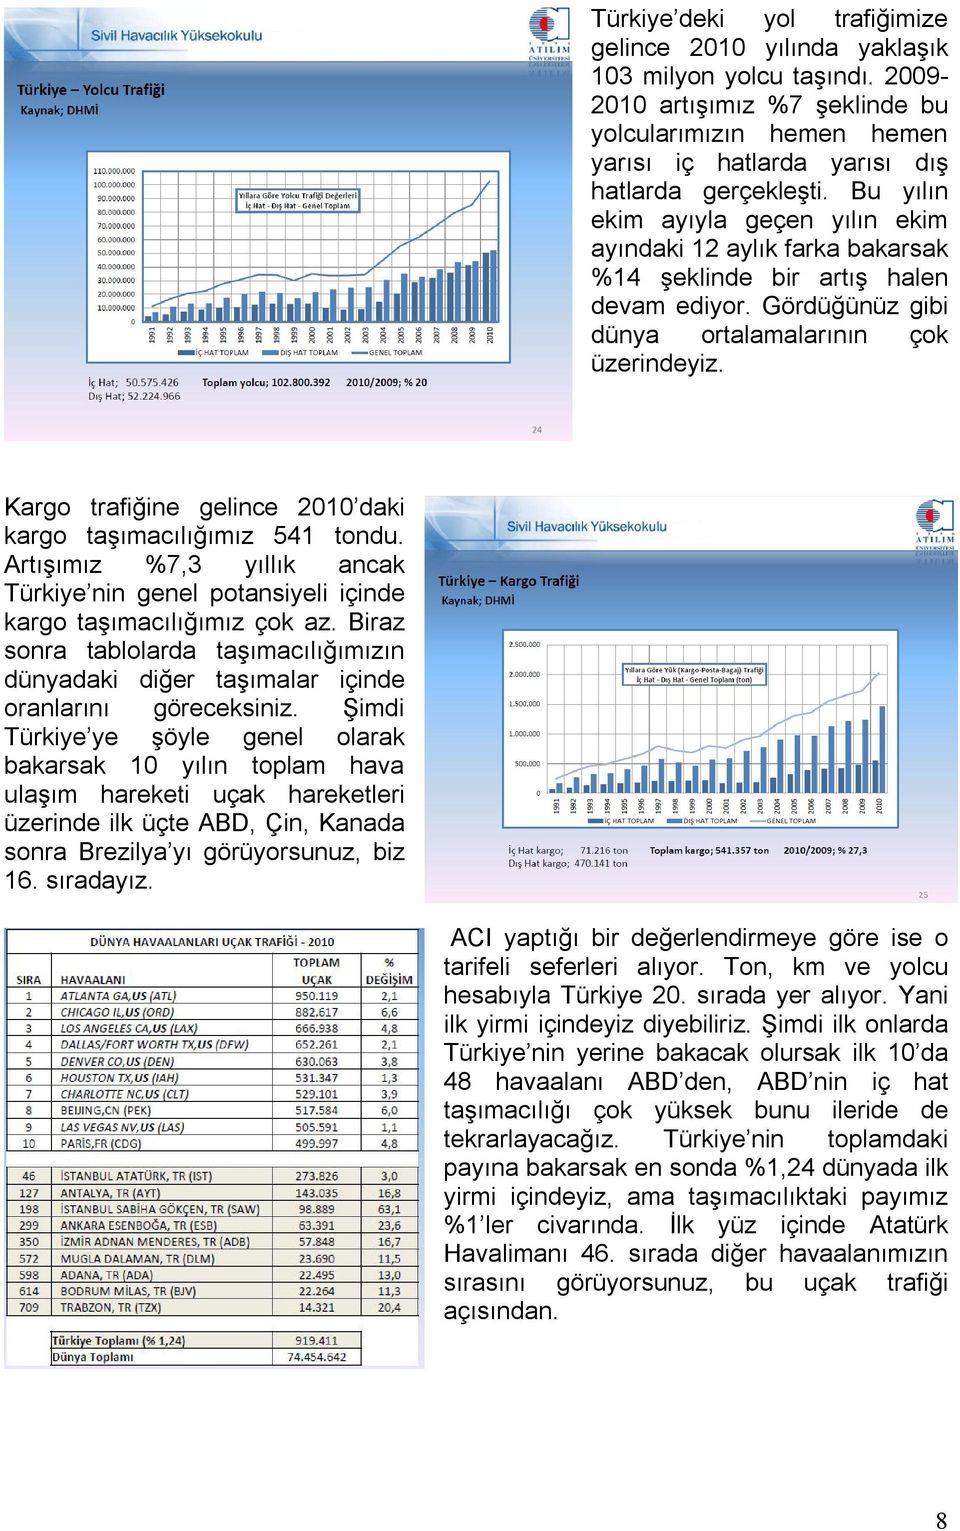 Kargo trafiğine gelince 2010 daki kargo taşımacılığımız 541 tondu. Artışımız %7,3 yıllık ancak Türkiye nin genel potansiyeli içinde kargo taşımacılığımız çok az.